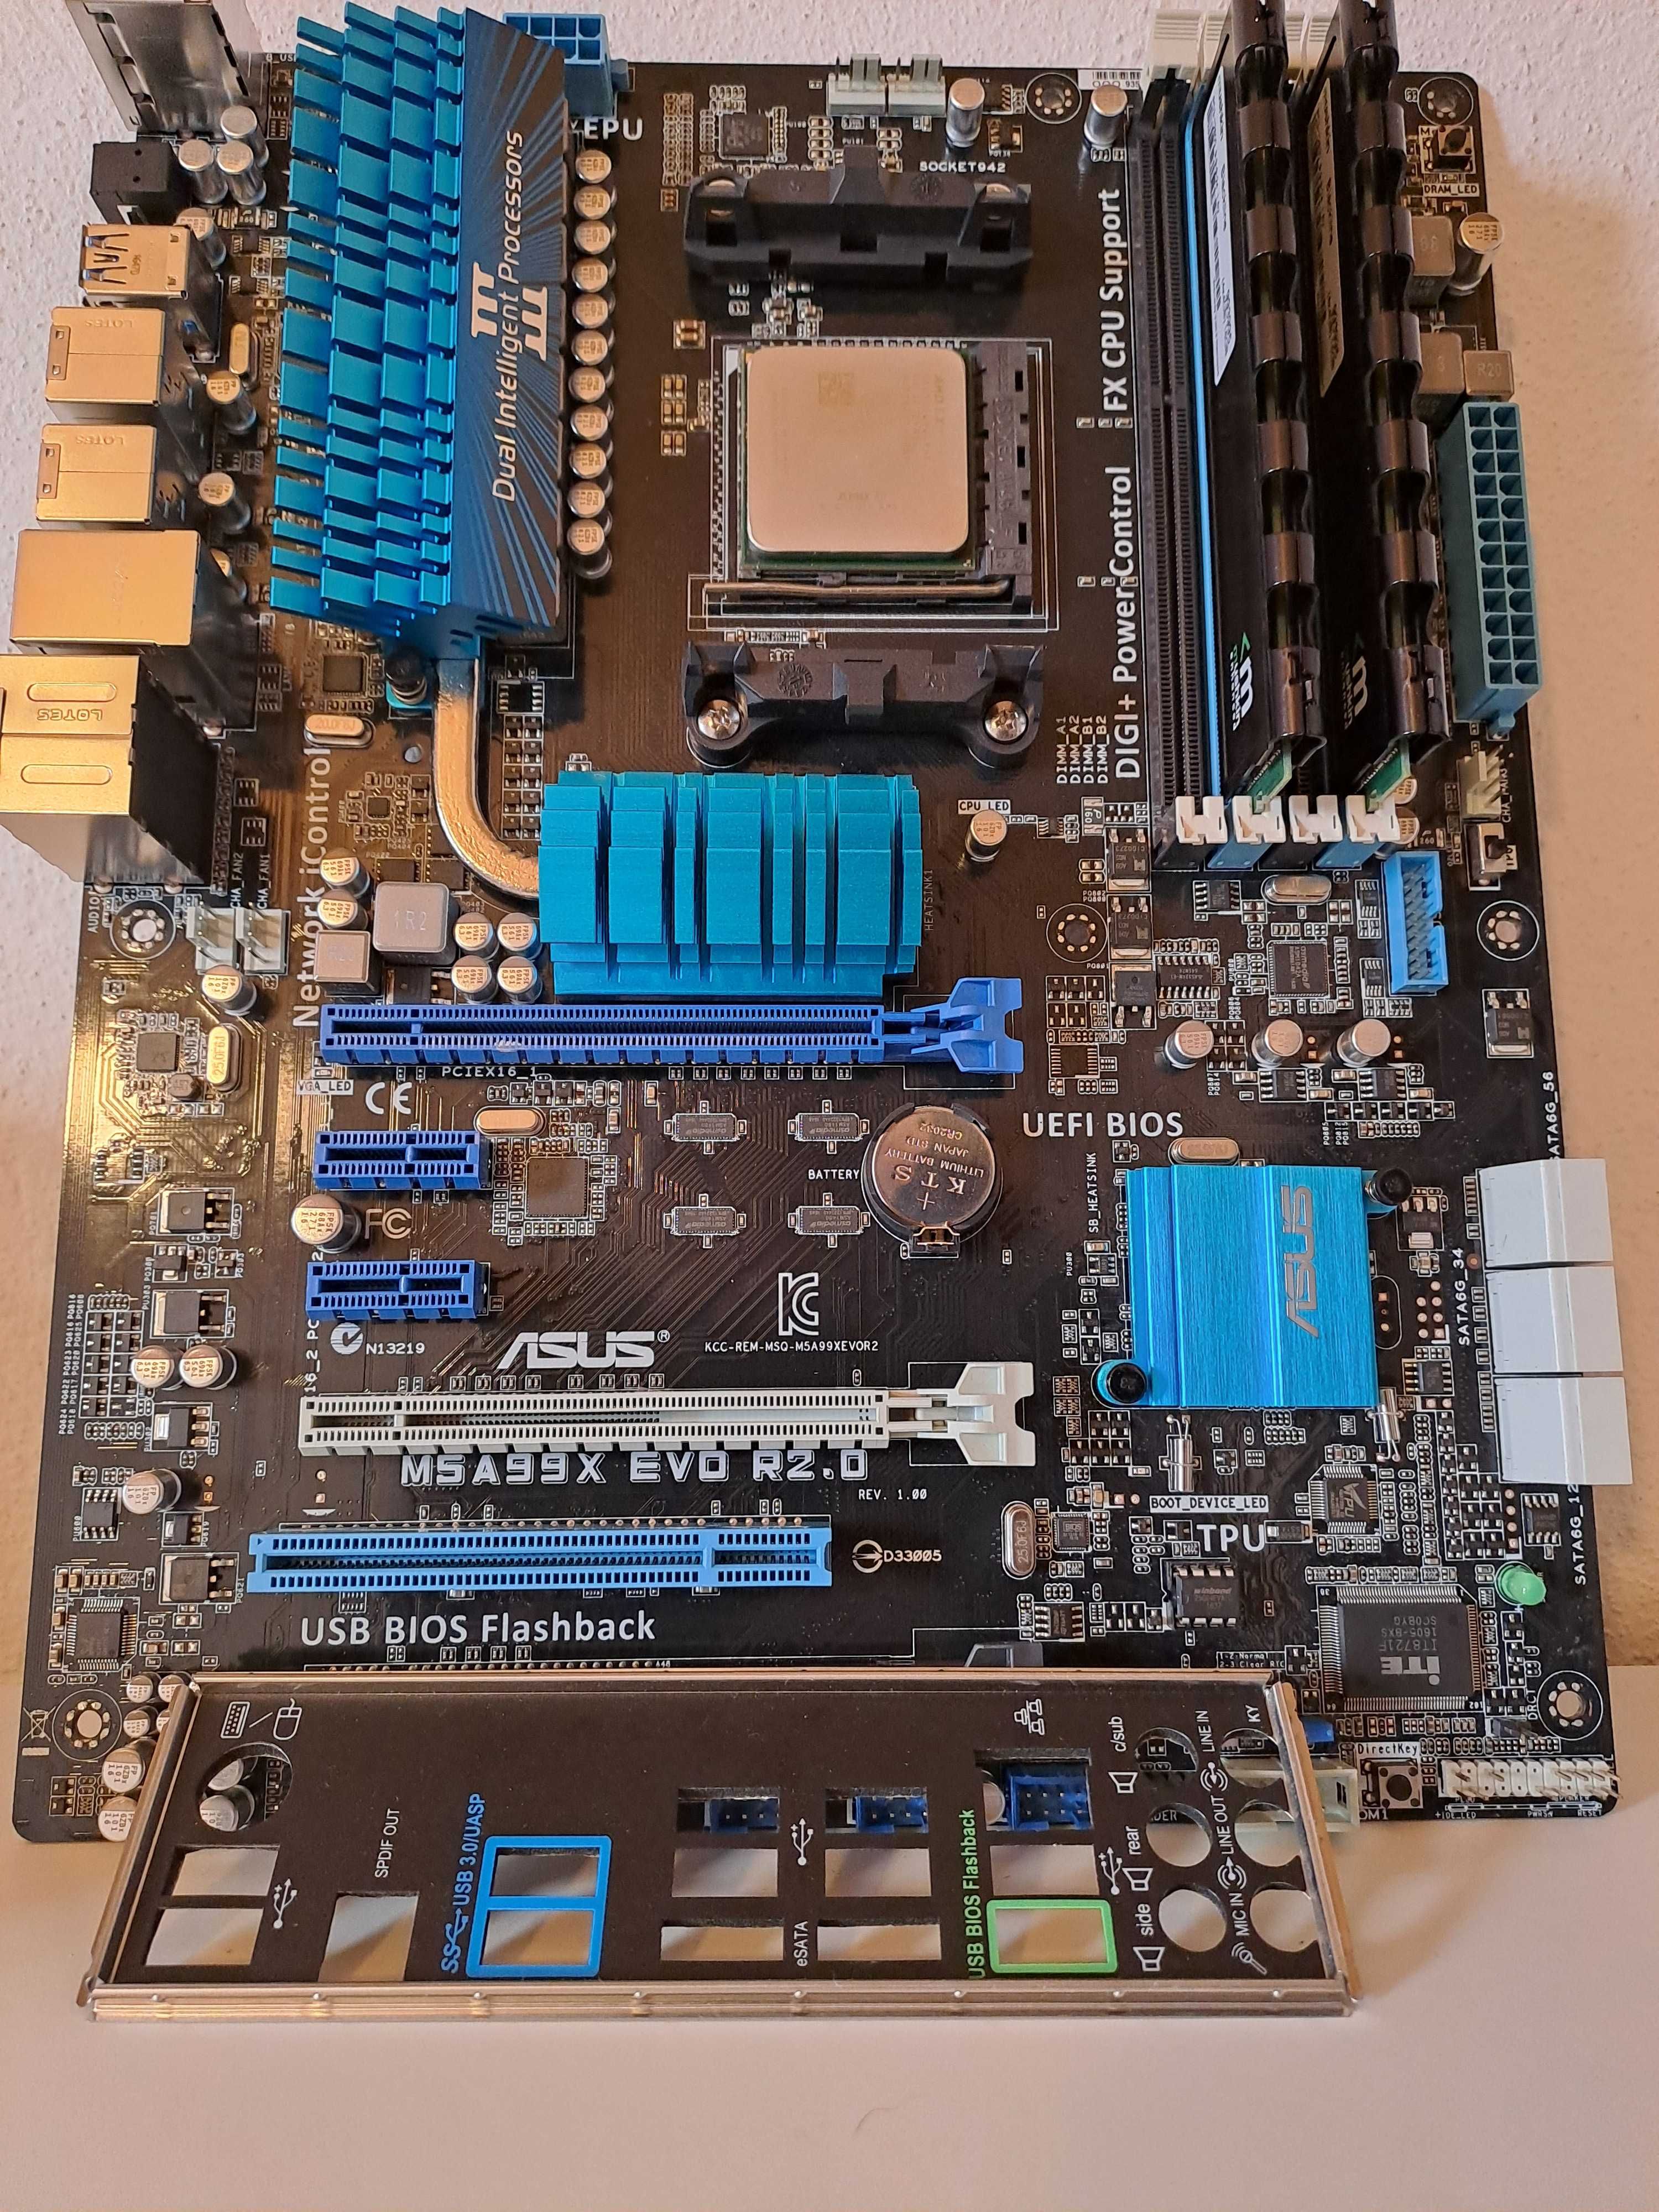 Bundle AMD FX-4300 / Board Asus M5A99X EVO R2.0 / 8GB DDR3 Mushkin